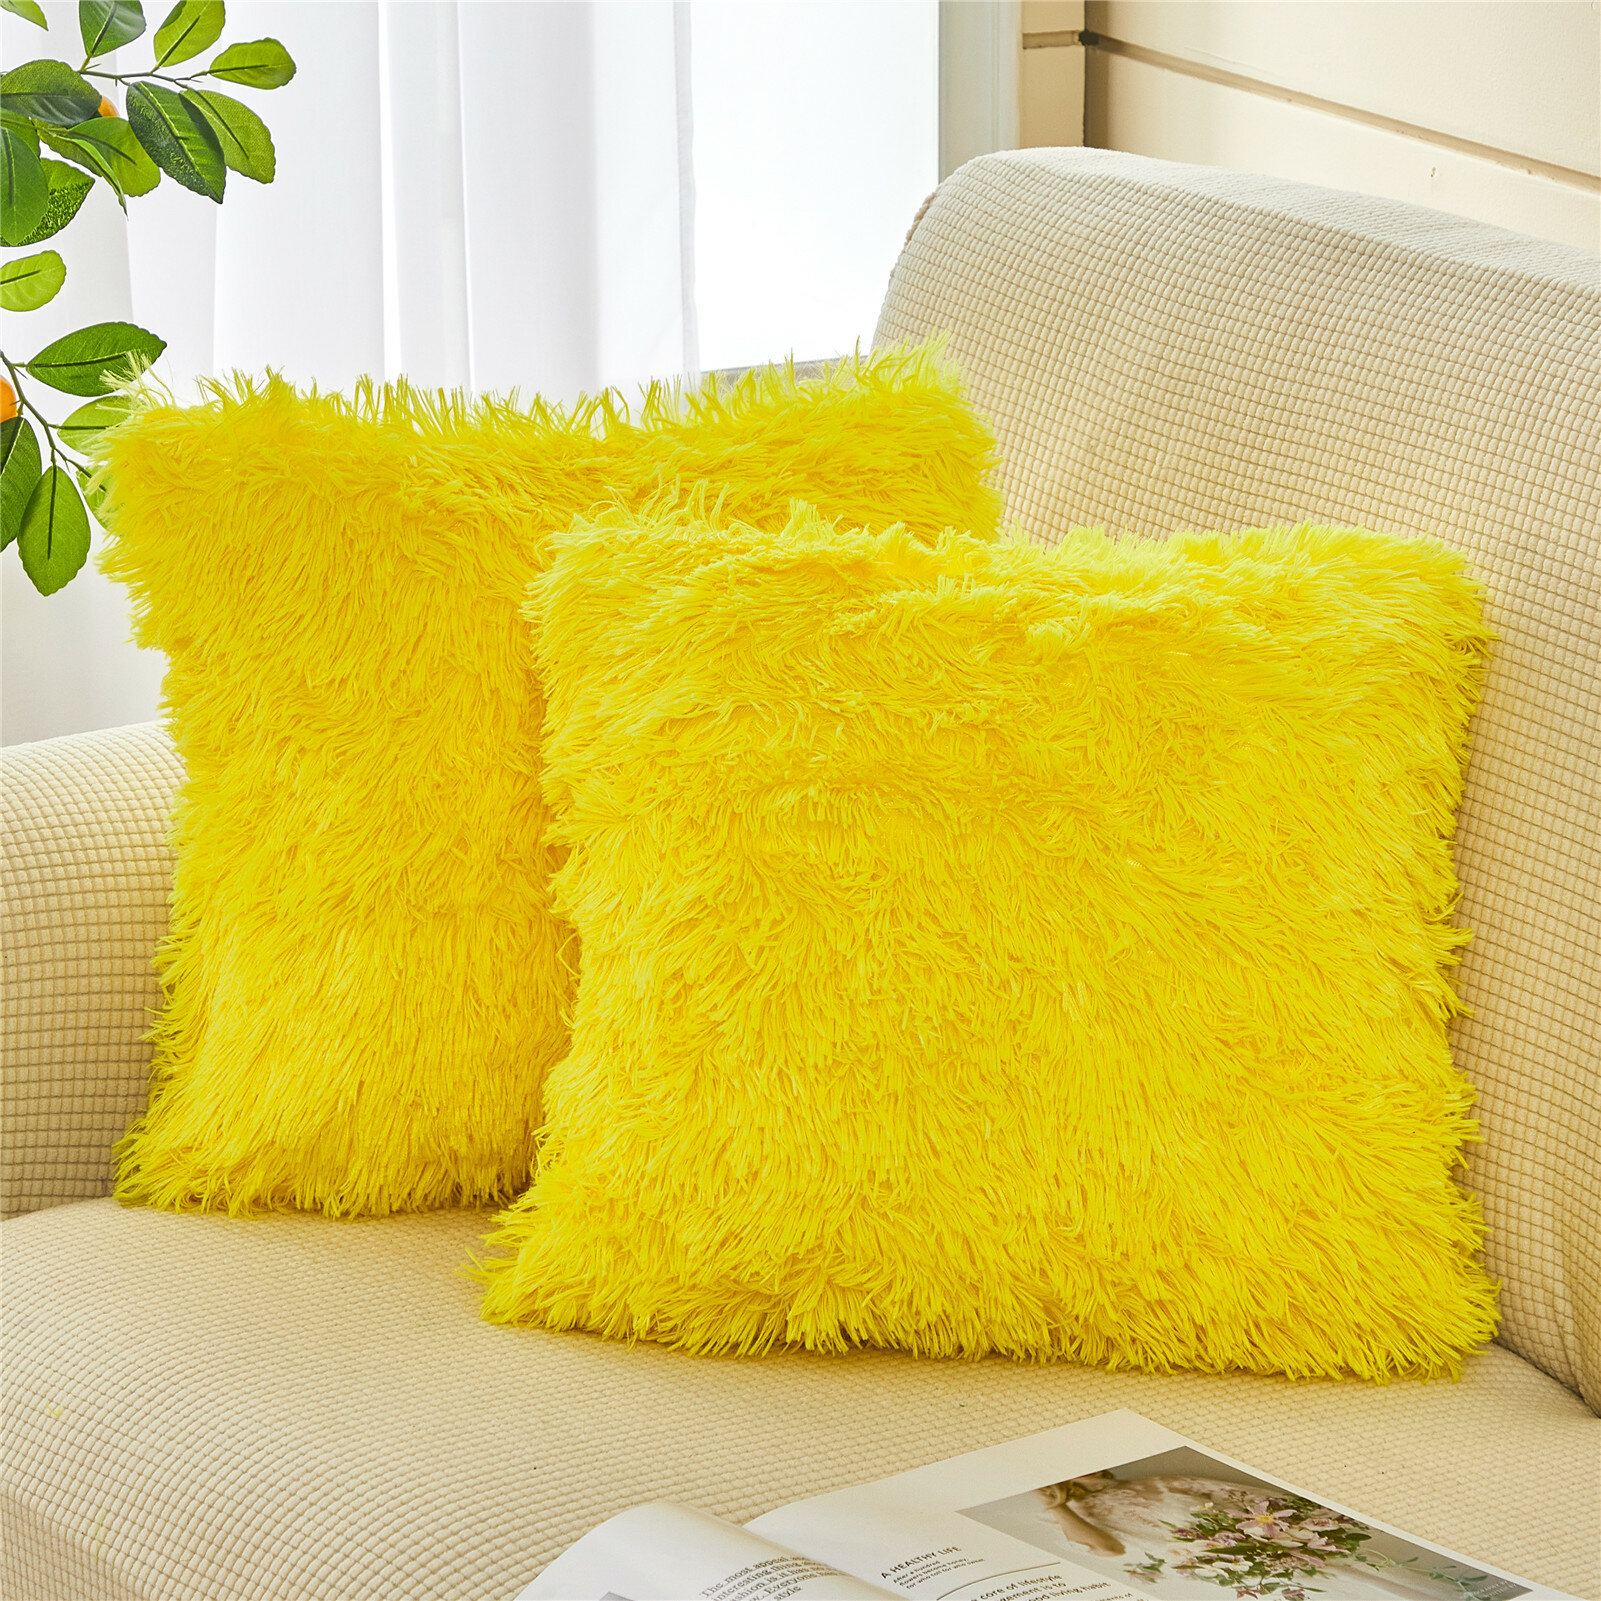 Декоративная подушка мех размер 50 на 50 см. цвет желтый